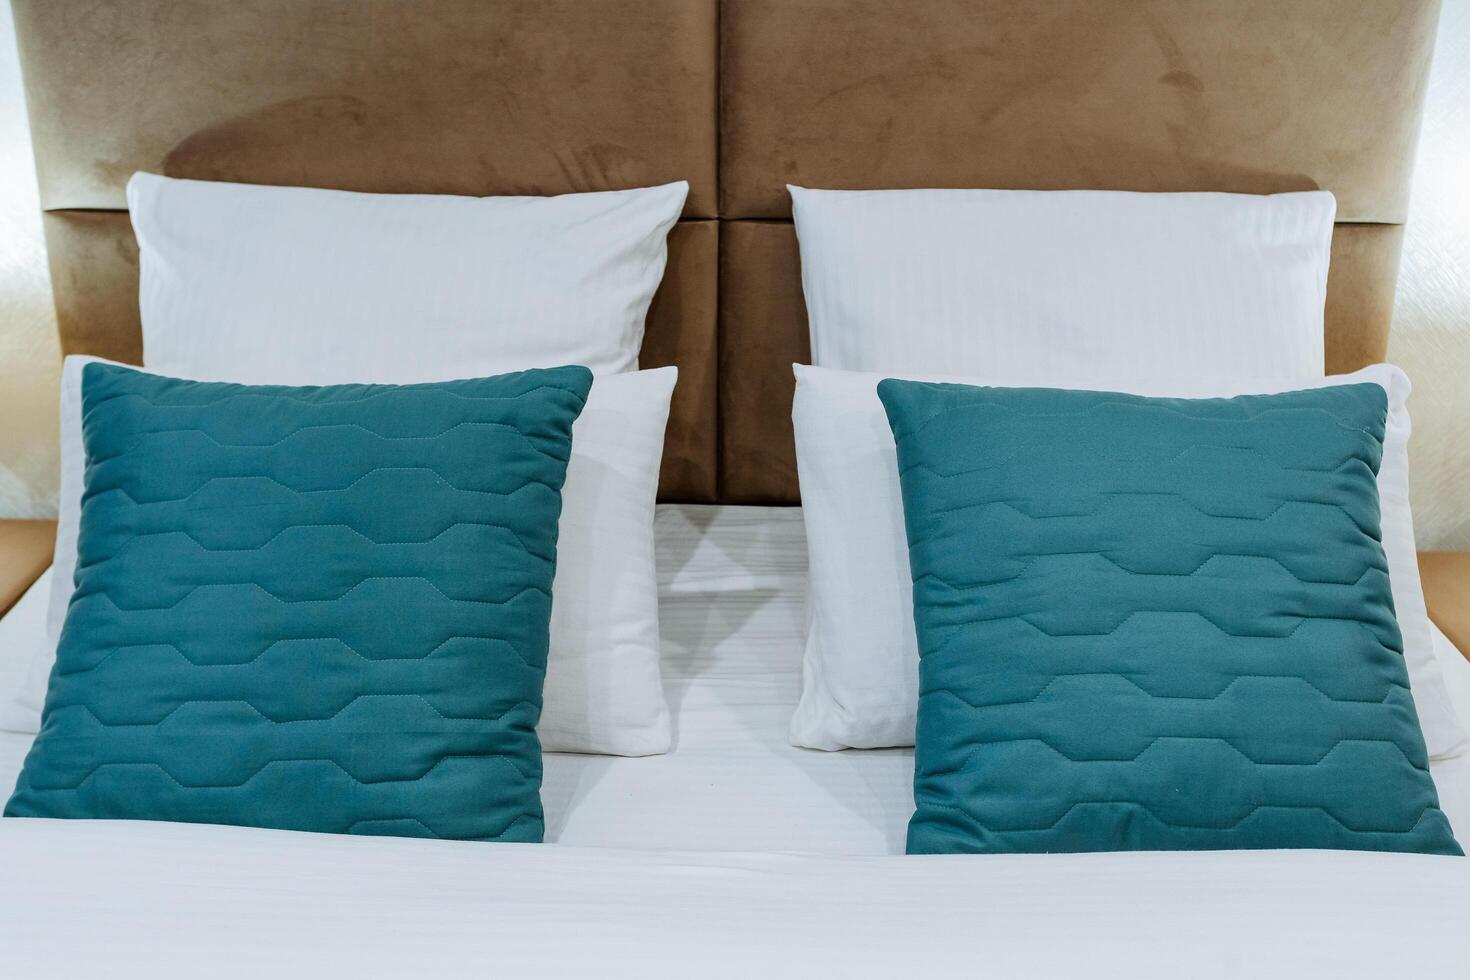 el cabeza de el cama, un conjunto de almohadas en el dormitorio, azul almohadas, blanco cama lino, fundas de almohada de diferente colores, un hotel habitación, noche Encendiendo en el habitación. foto